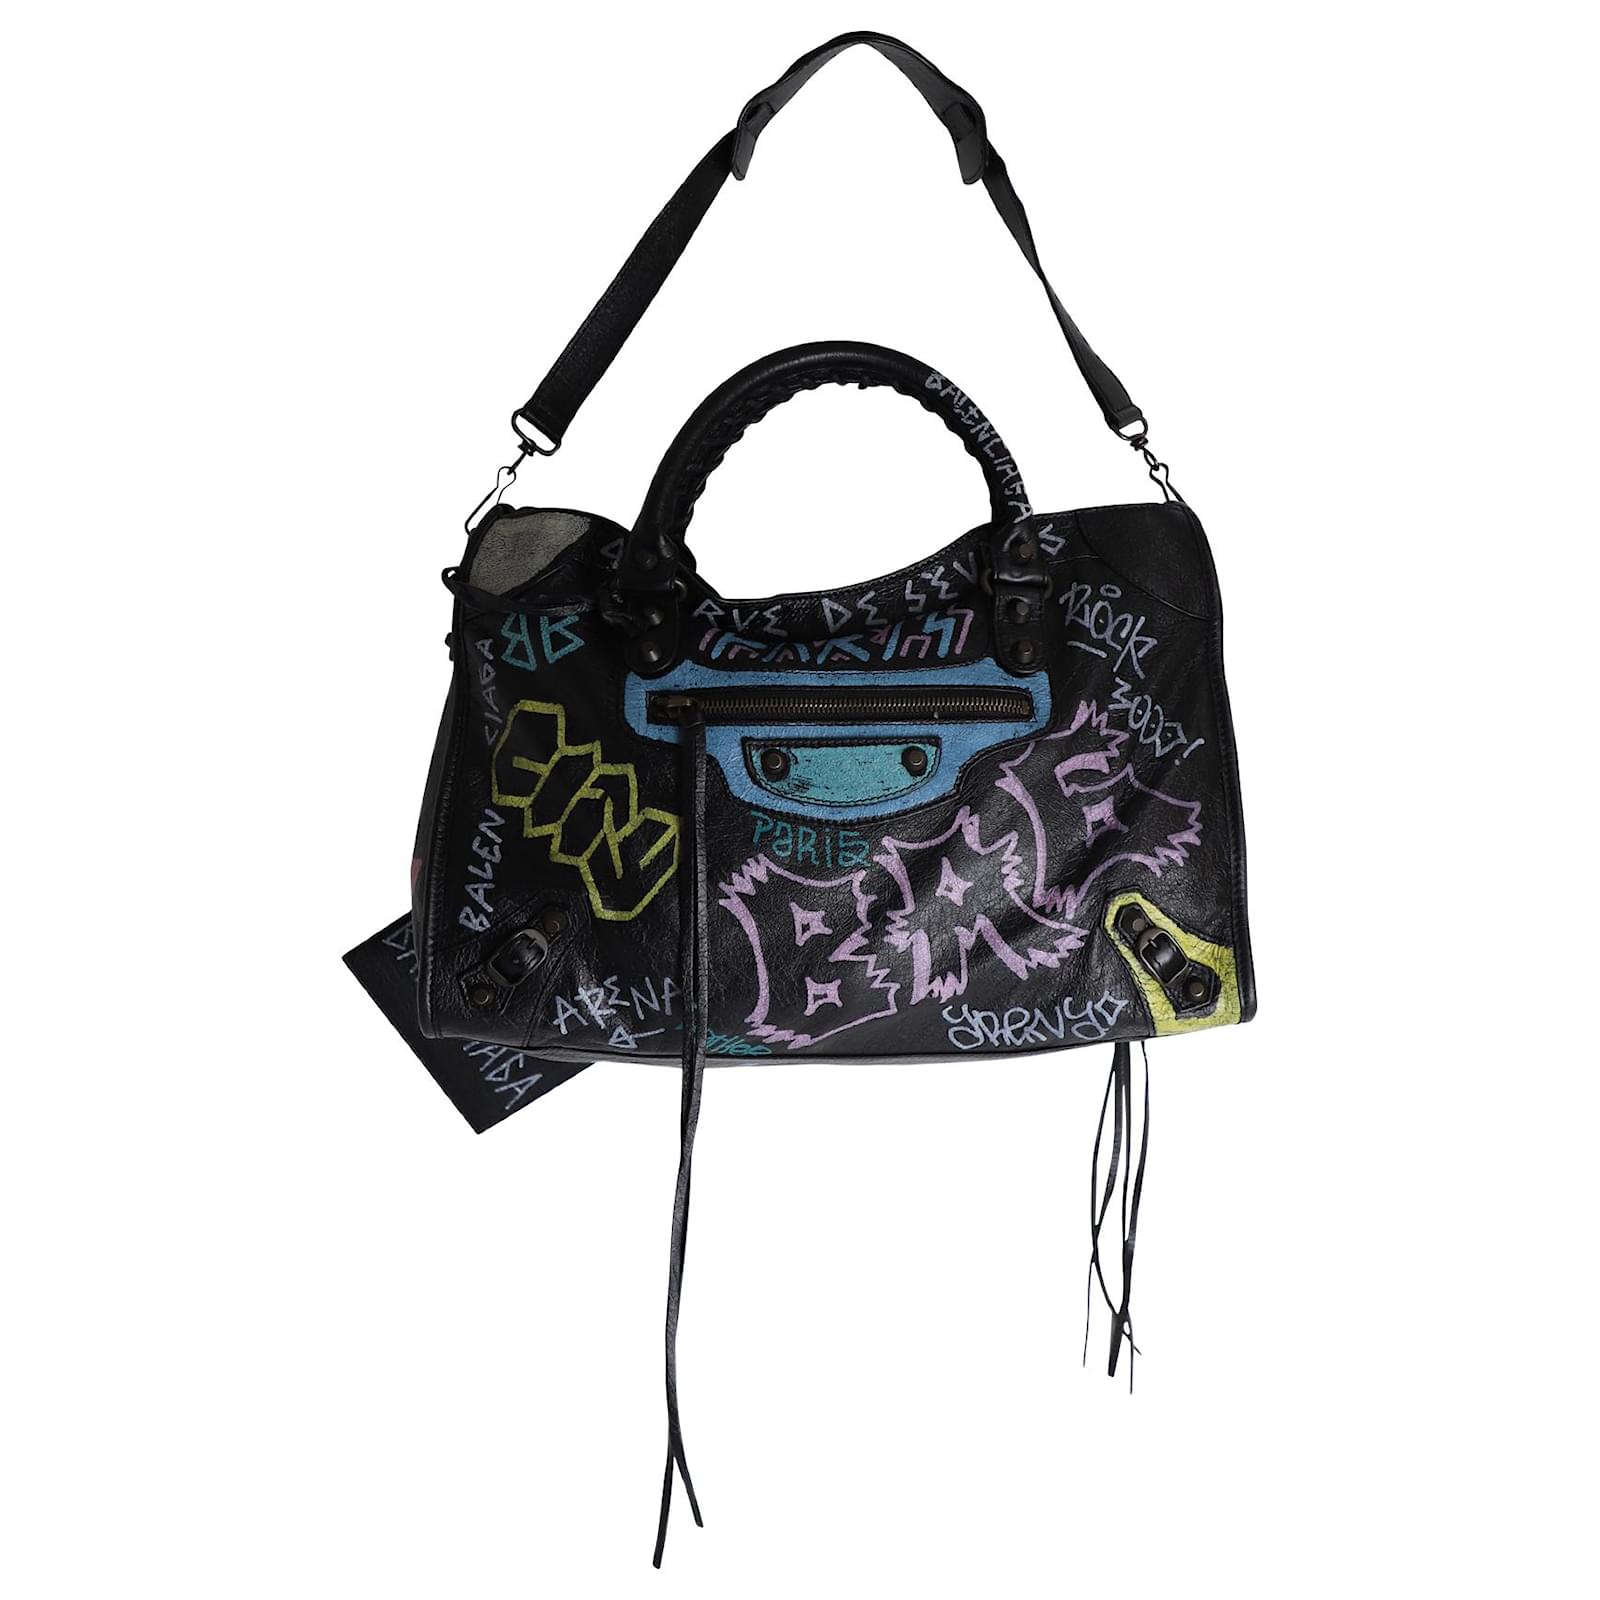 Balenciaga, Bags, Balenciaga Graffiti Bag